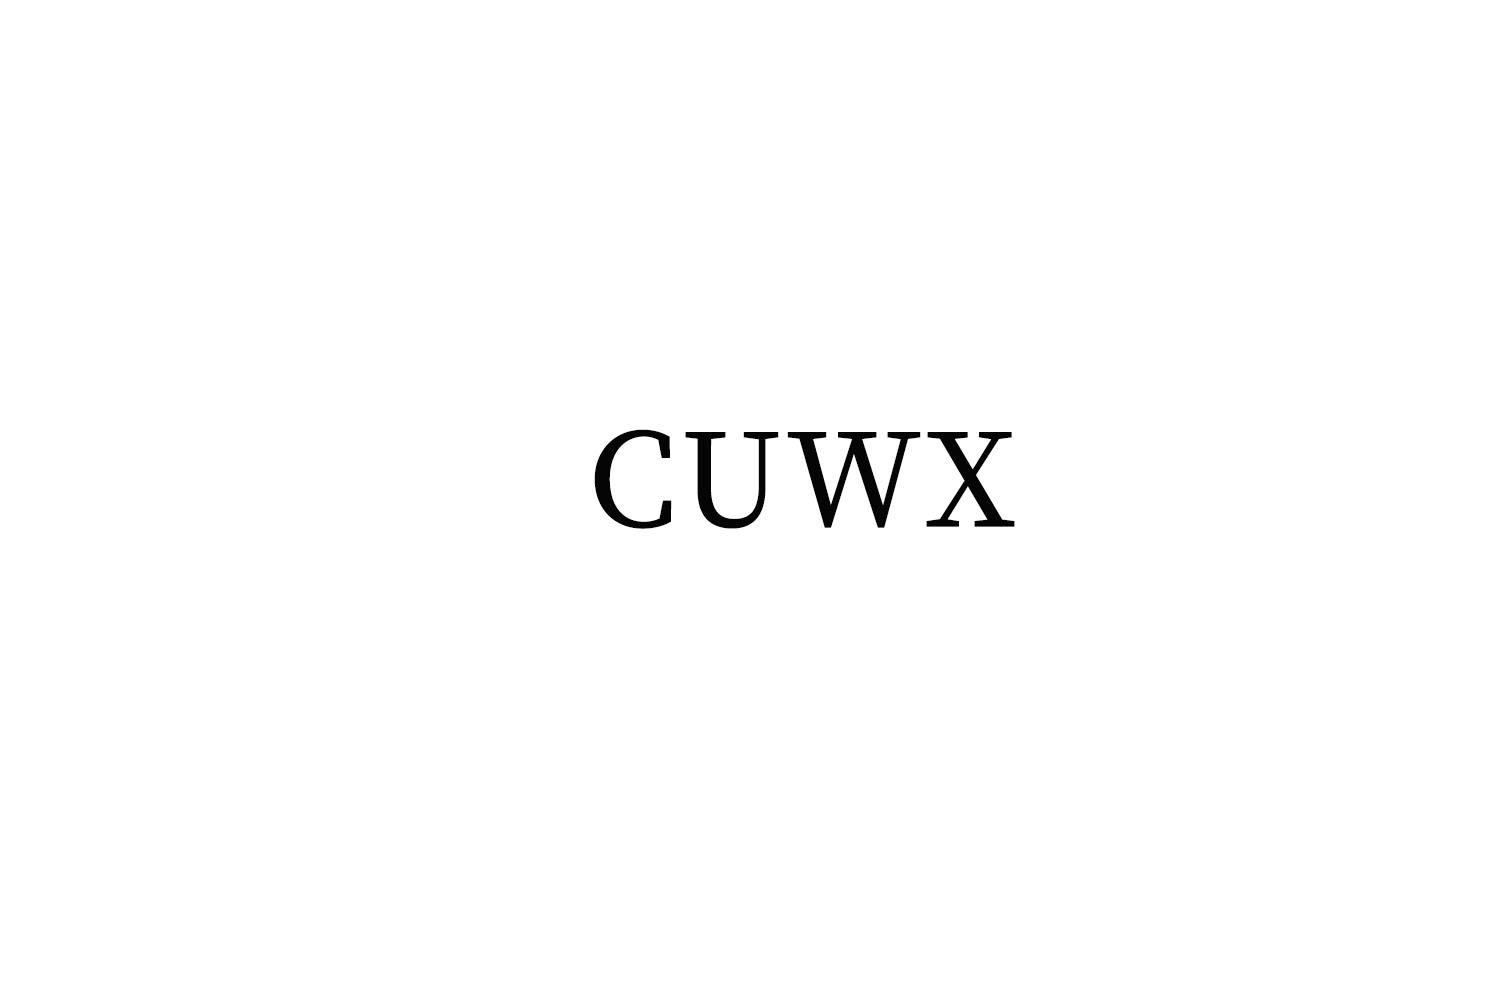 CUWX